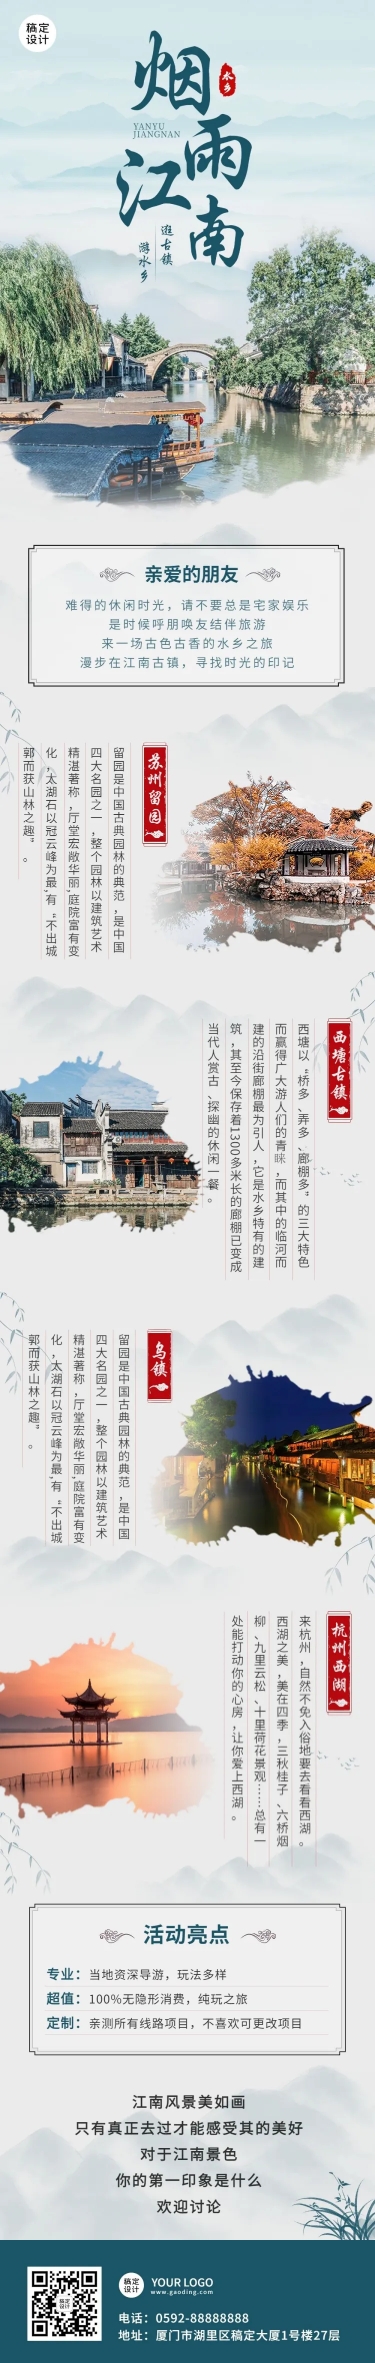 旅游出行江南线系列之旅手绘中国风文章长图预览效果